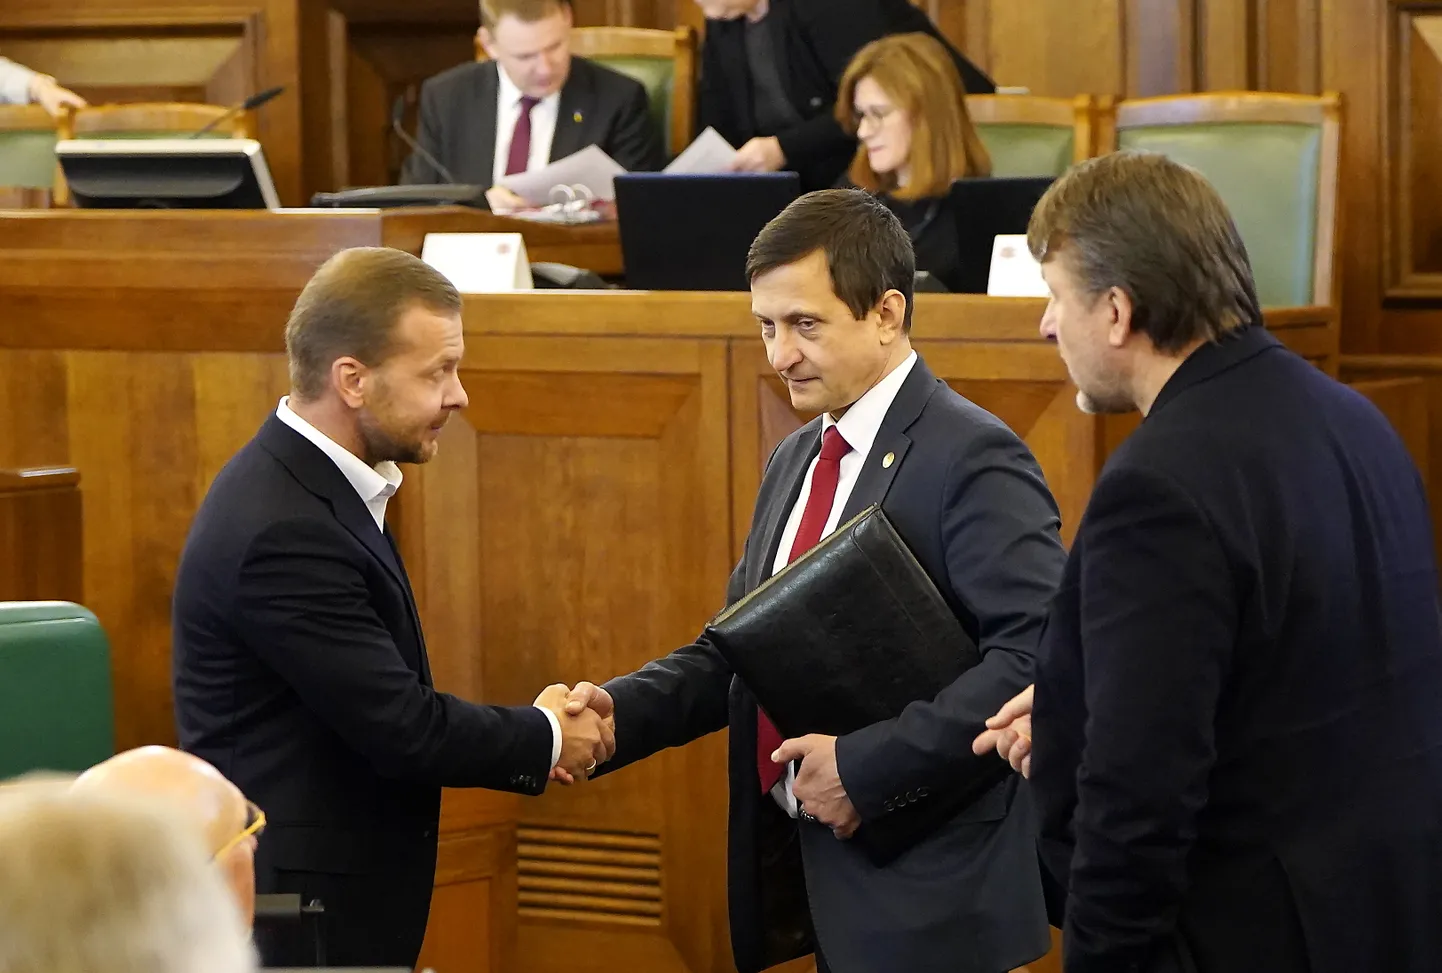 Arhīva foto: Saeimas deputāts Aleksejs Rosļikovs (no kreisās), Saeimas sekretārs Armands Krauze un Saeimas deputāts Ainārs Šlesers Saeimas sēdes laikā.